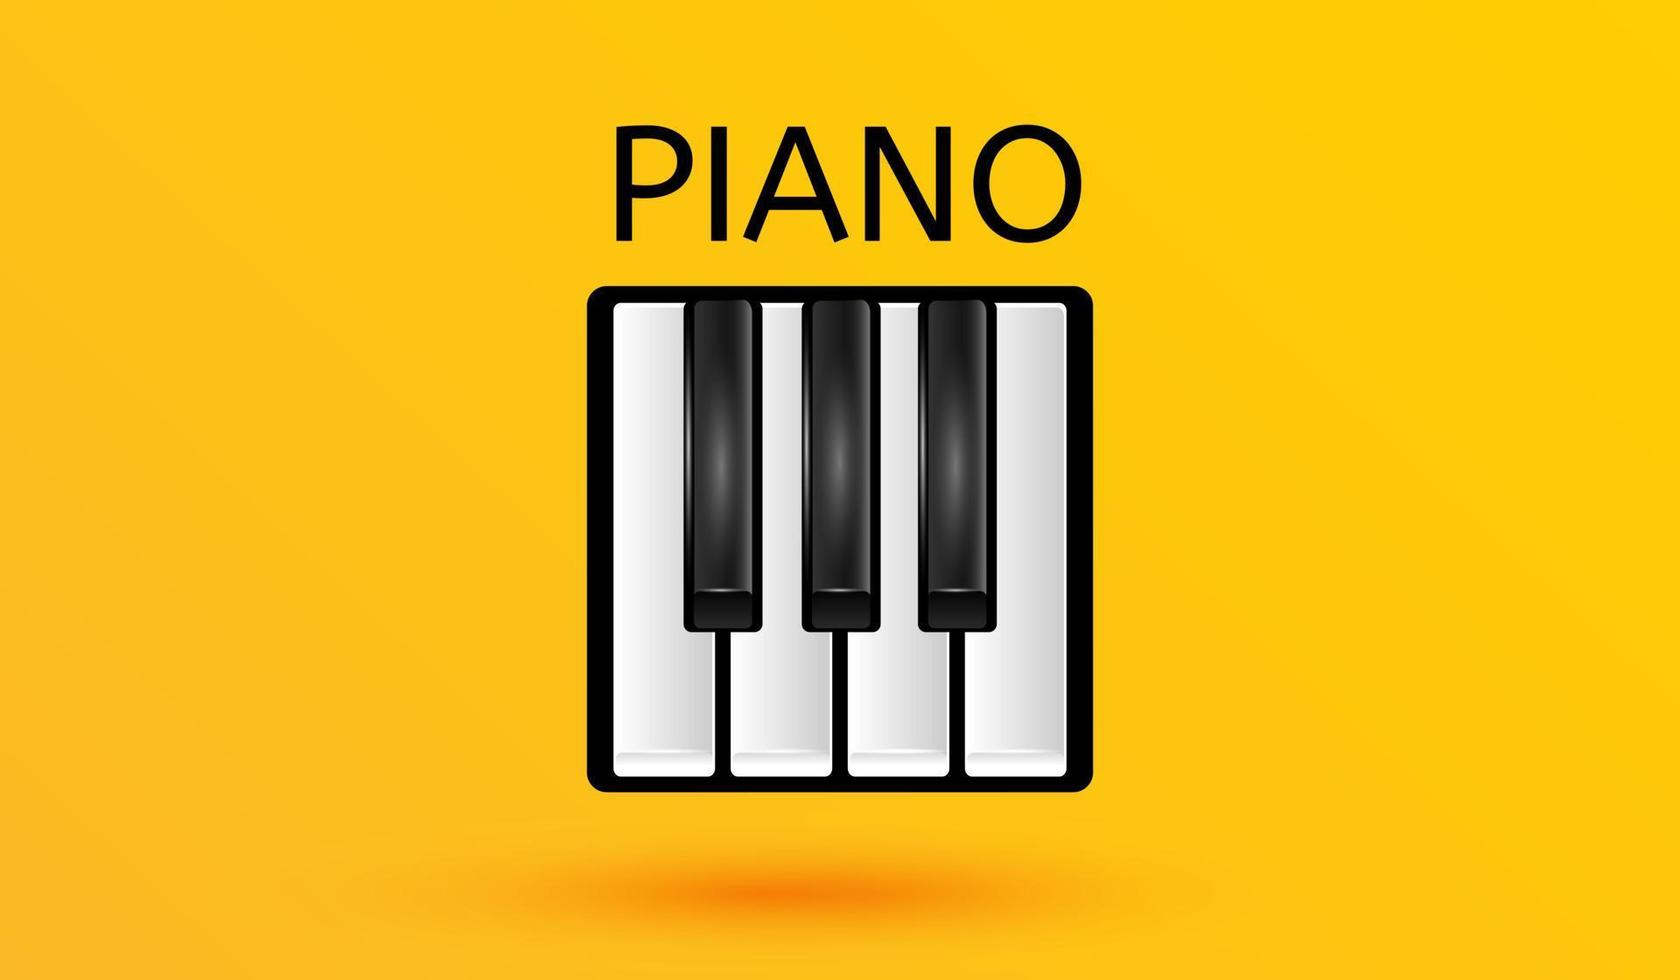 teclas de piano ícone musical símbolo de teclado preto e branco isolado em fundo amarelo estilo de ilustração vetorial de sinal 3d vetor